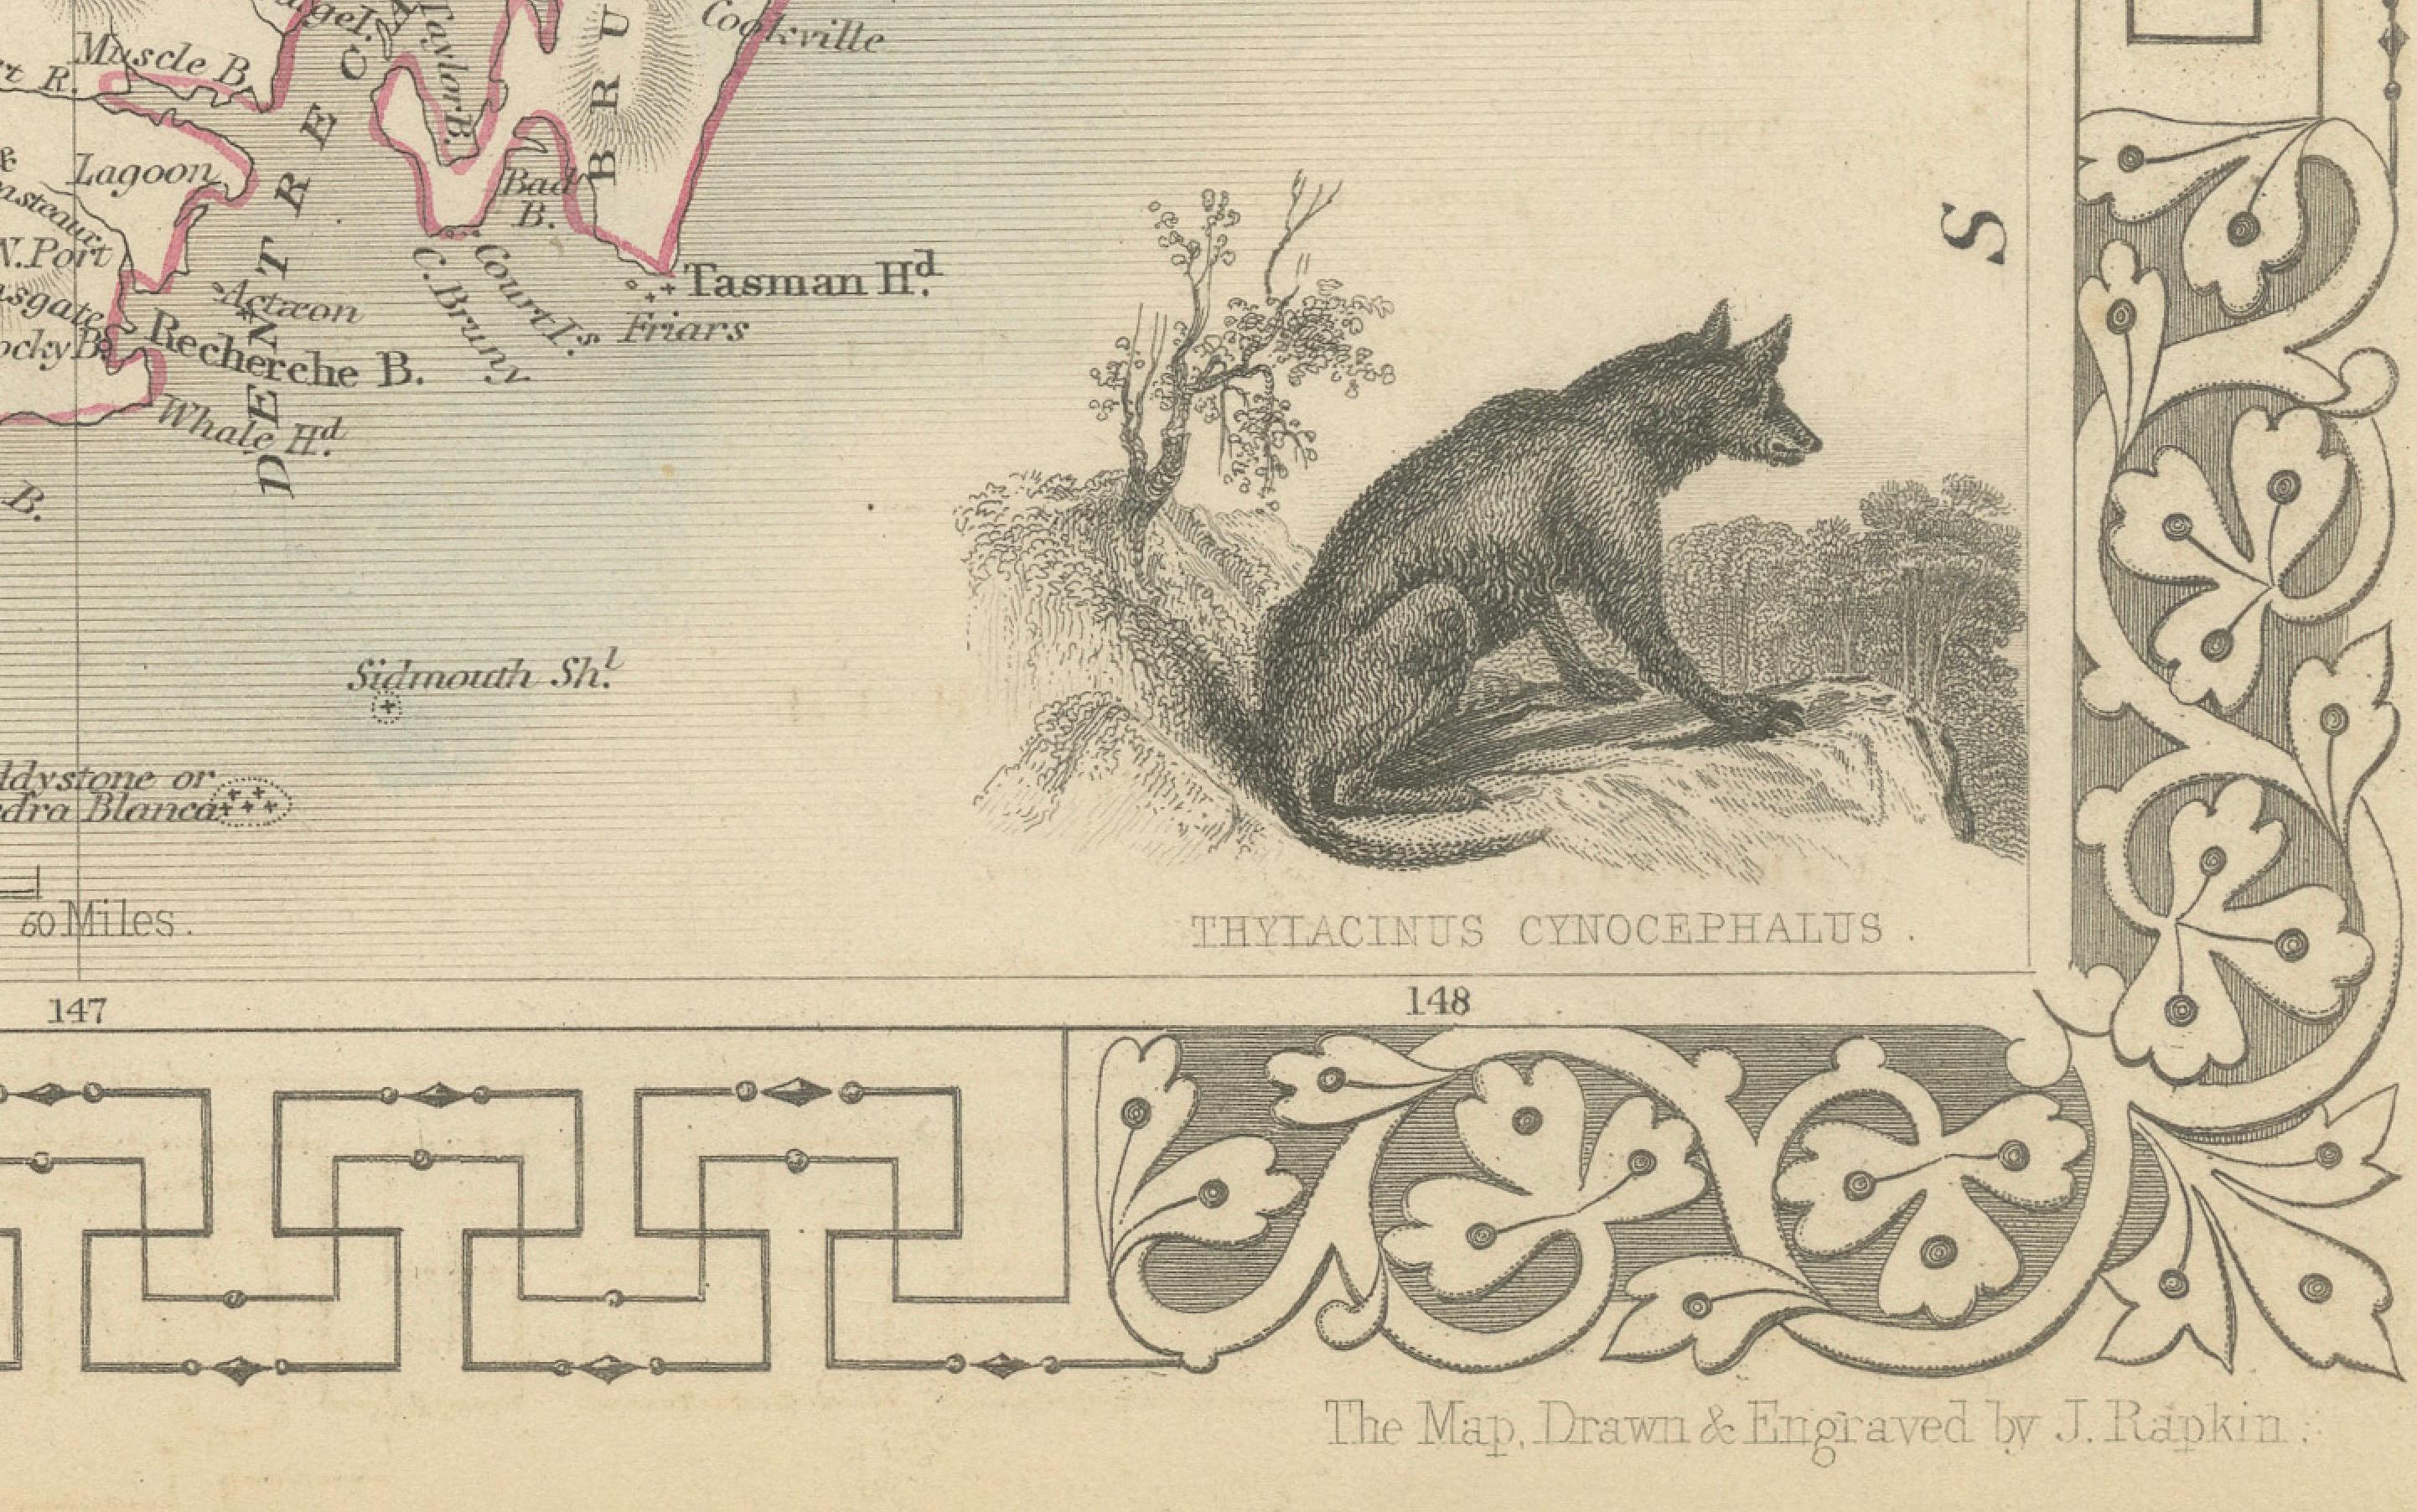 John Tallis & Company war im 19. Jahrhundert für seine detaillierten und kunstvollen Karten bekannt. Ihre Karten zeichnen sich durch aufwändige Bordüren und Vignetten aus, die ebenso informativ wie dekorativ sind.

Die Karte zeigt Tasmanien, das